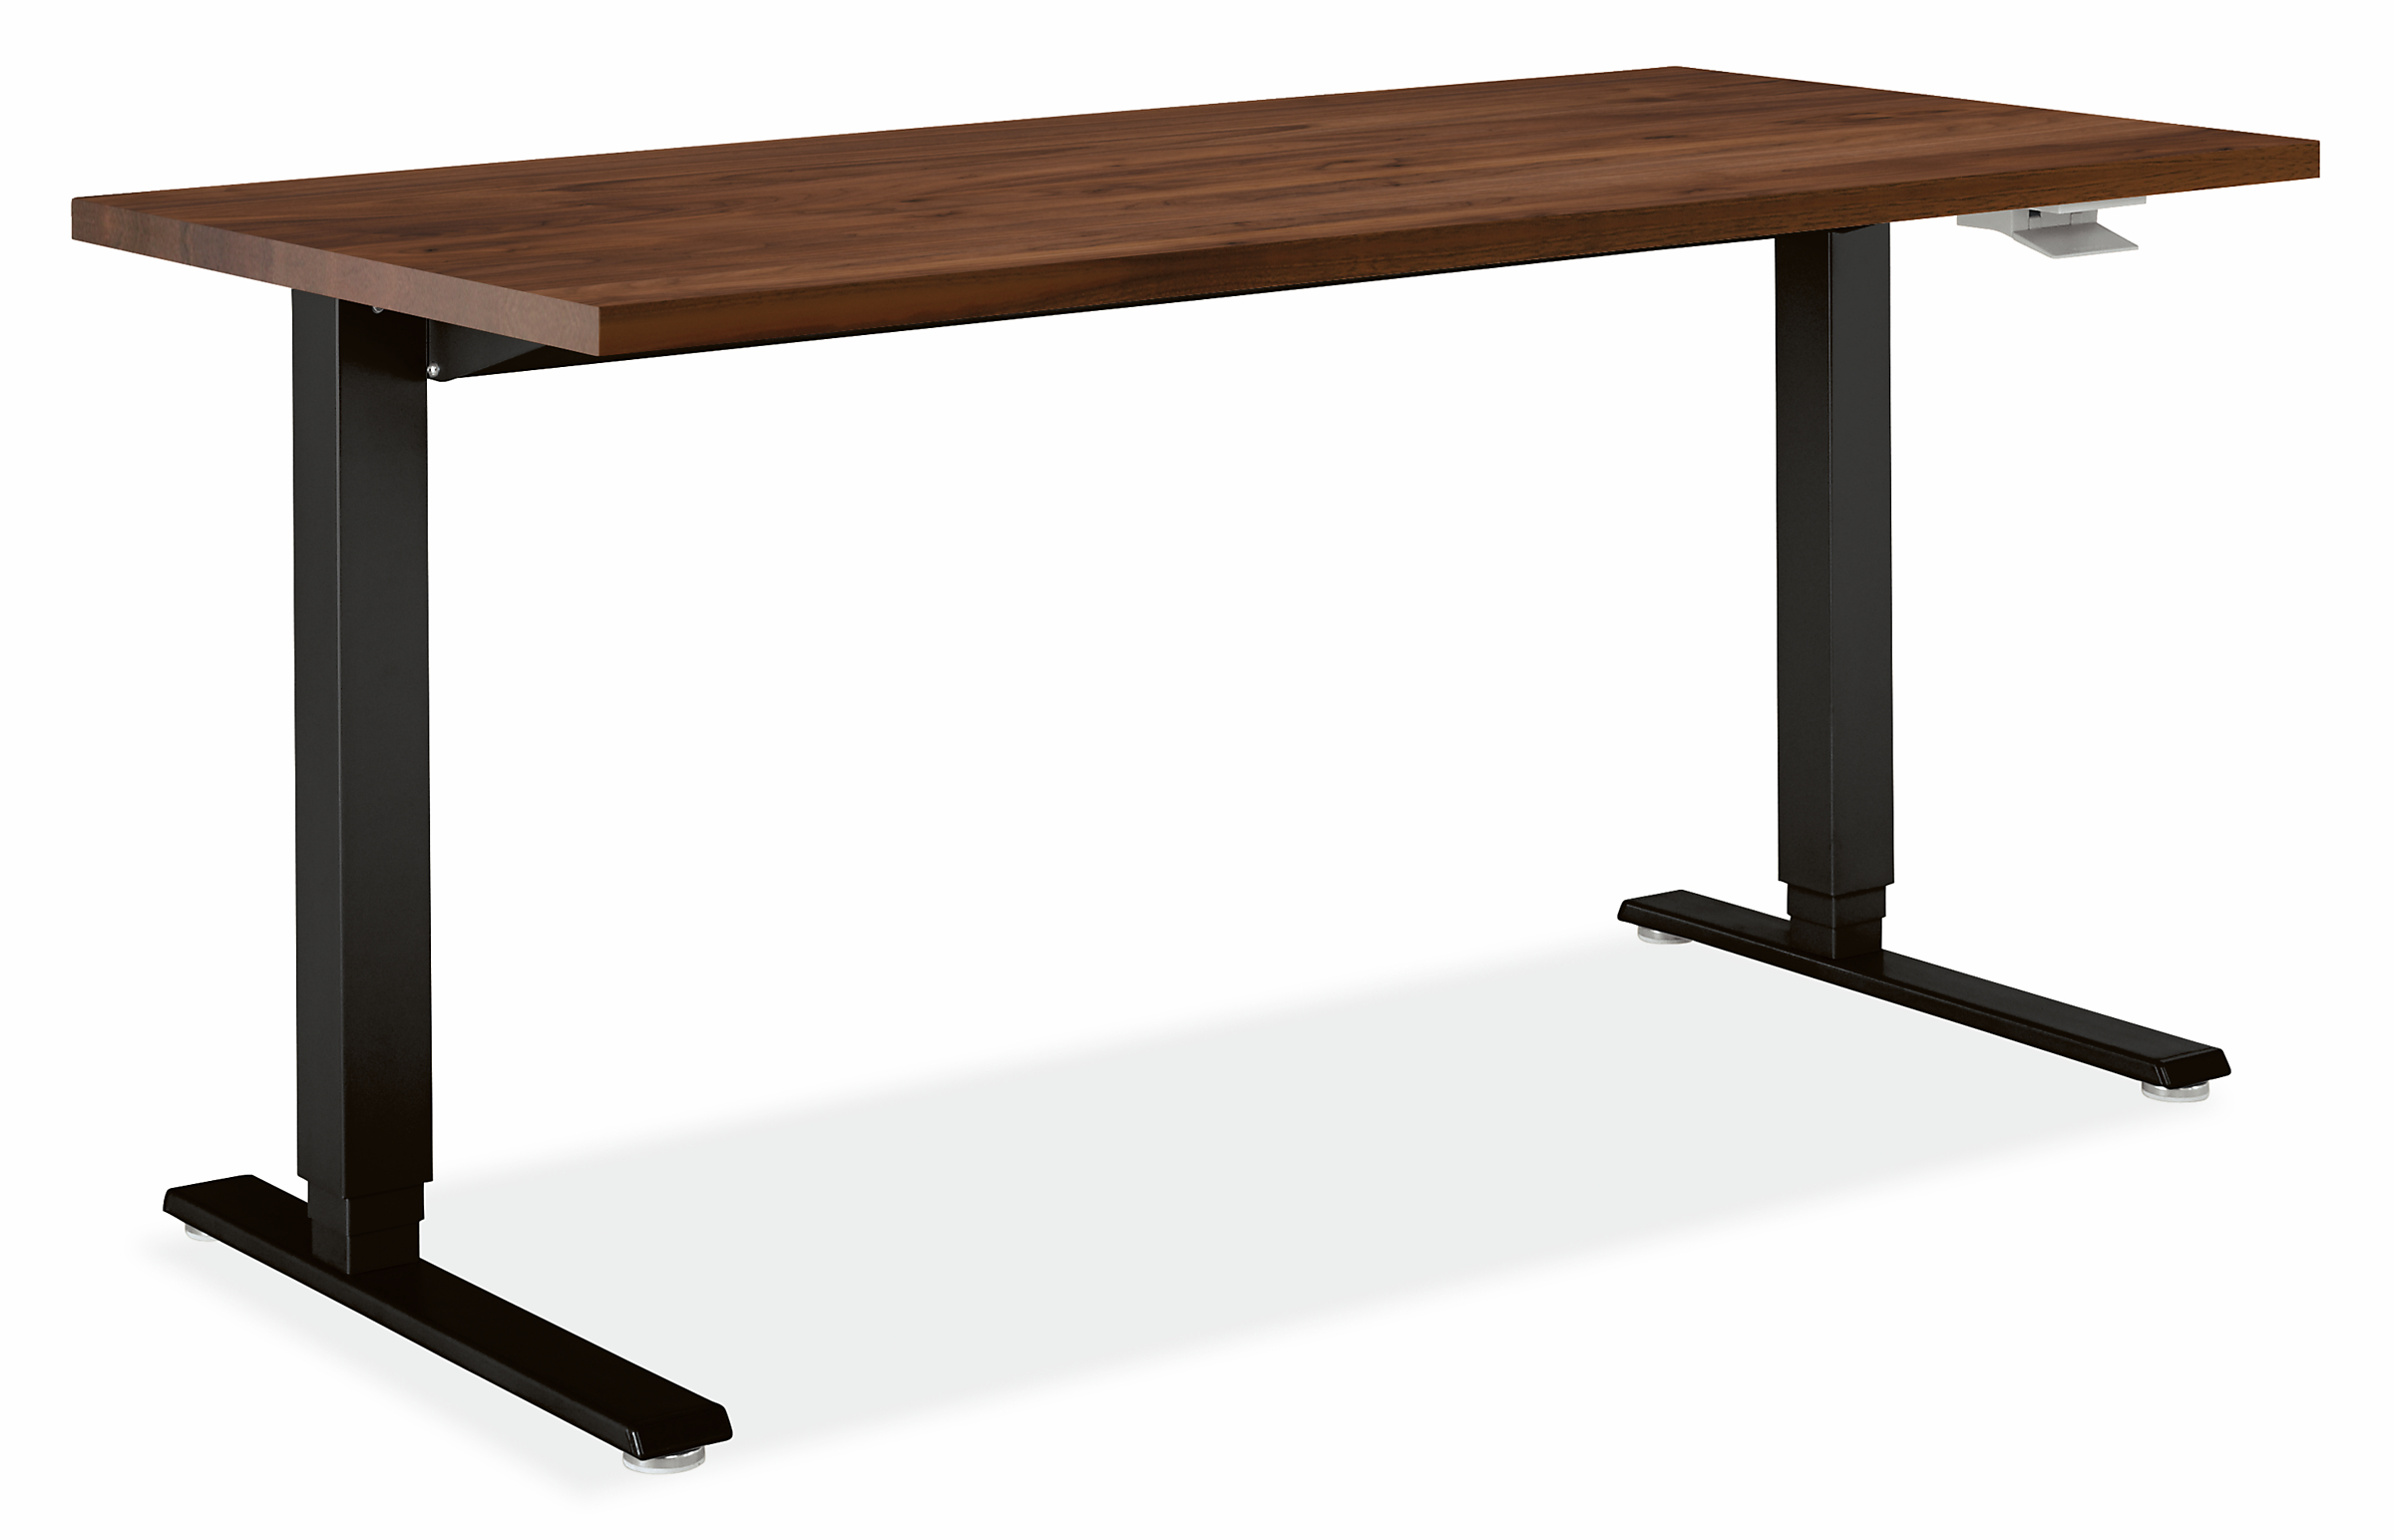 Float® 48w 30d 27-47h Adjustable Standing Desk